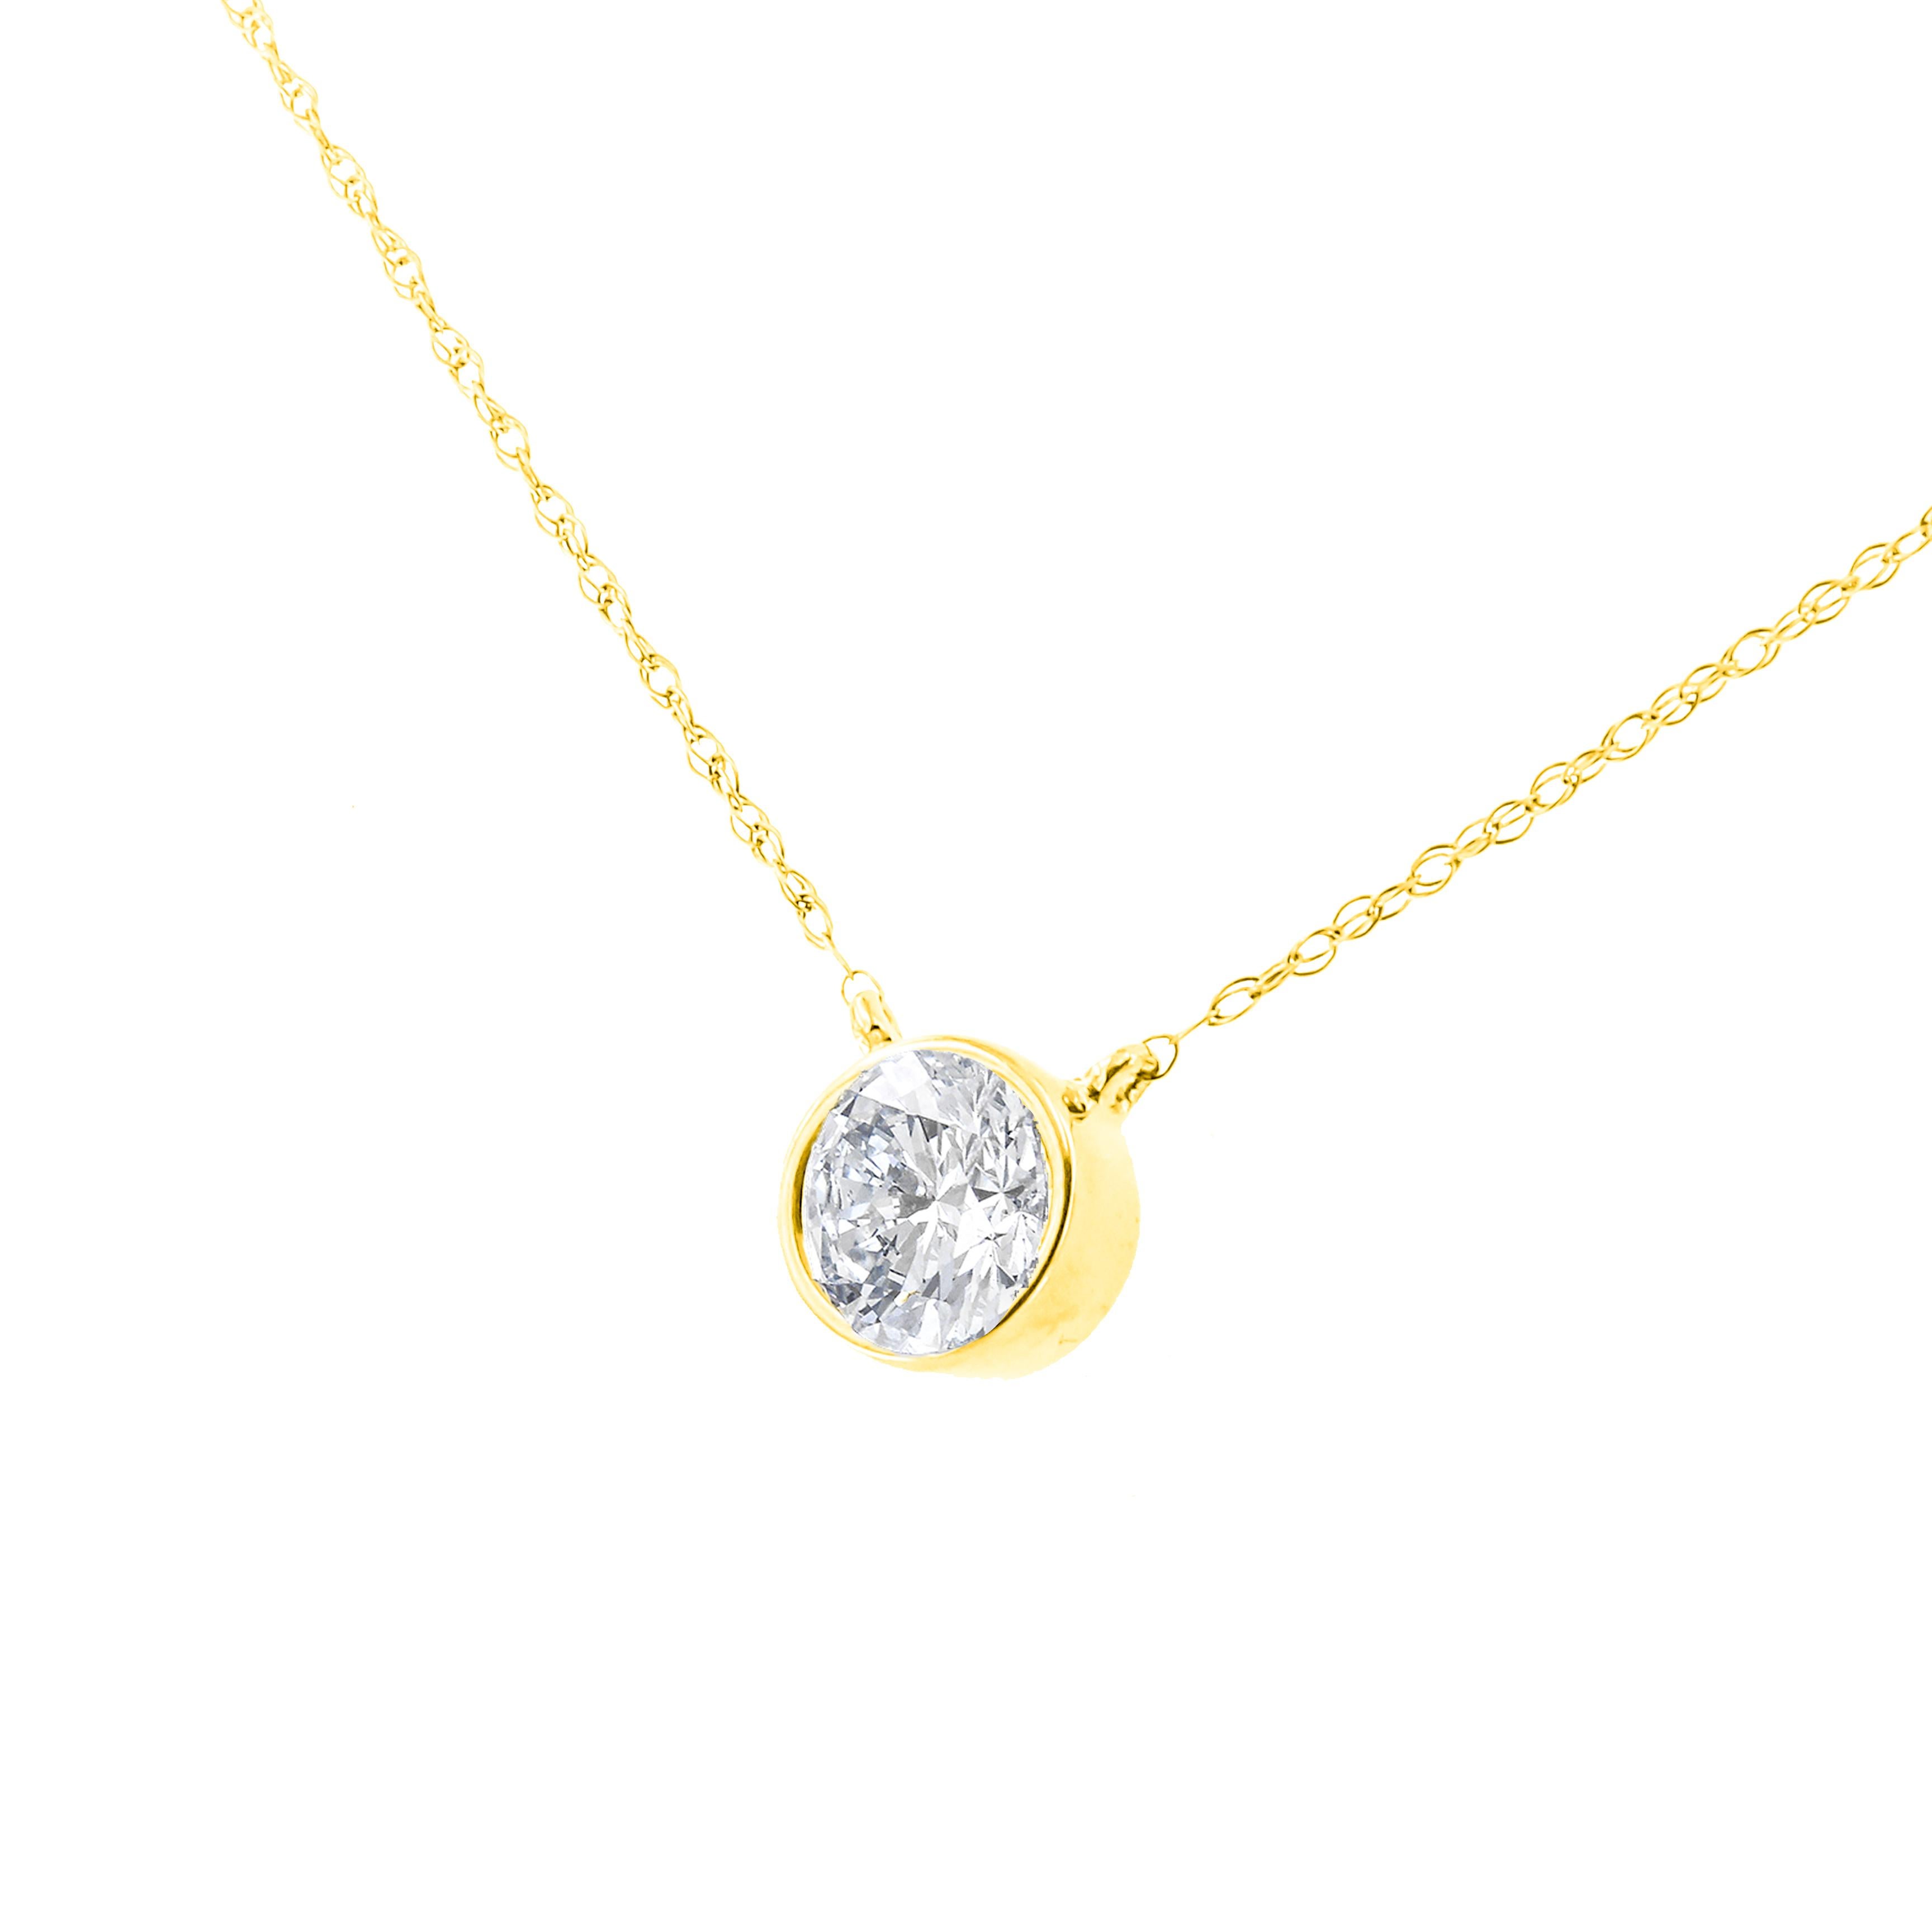 Portez ce collier solitaire classique pour ajouter une touche d'élégance à votre journée. Un brillant diamant rond de 1ct TDW est entouré d'un chaton et ancré au centre d'une délicate chaîne en câble. Ce magnifique pendentif est fabriqué en argent